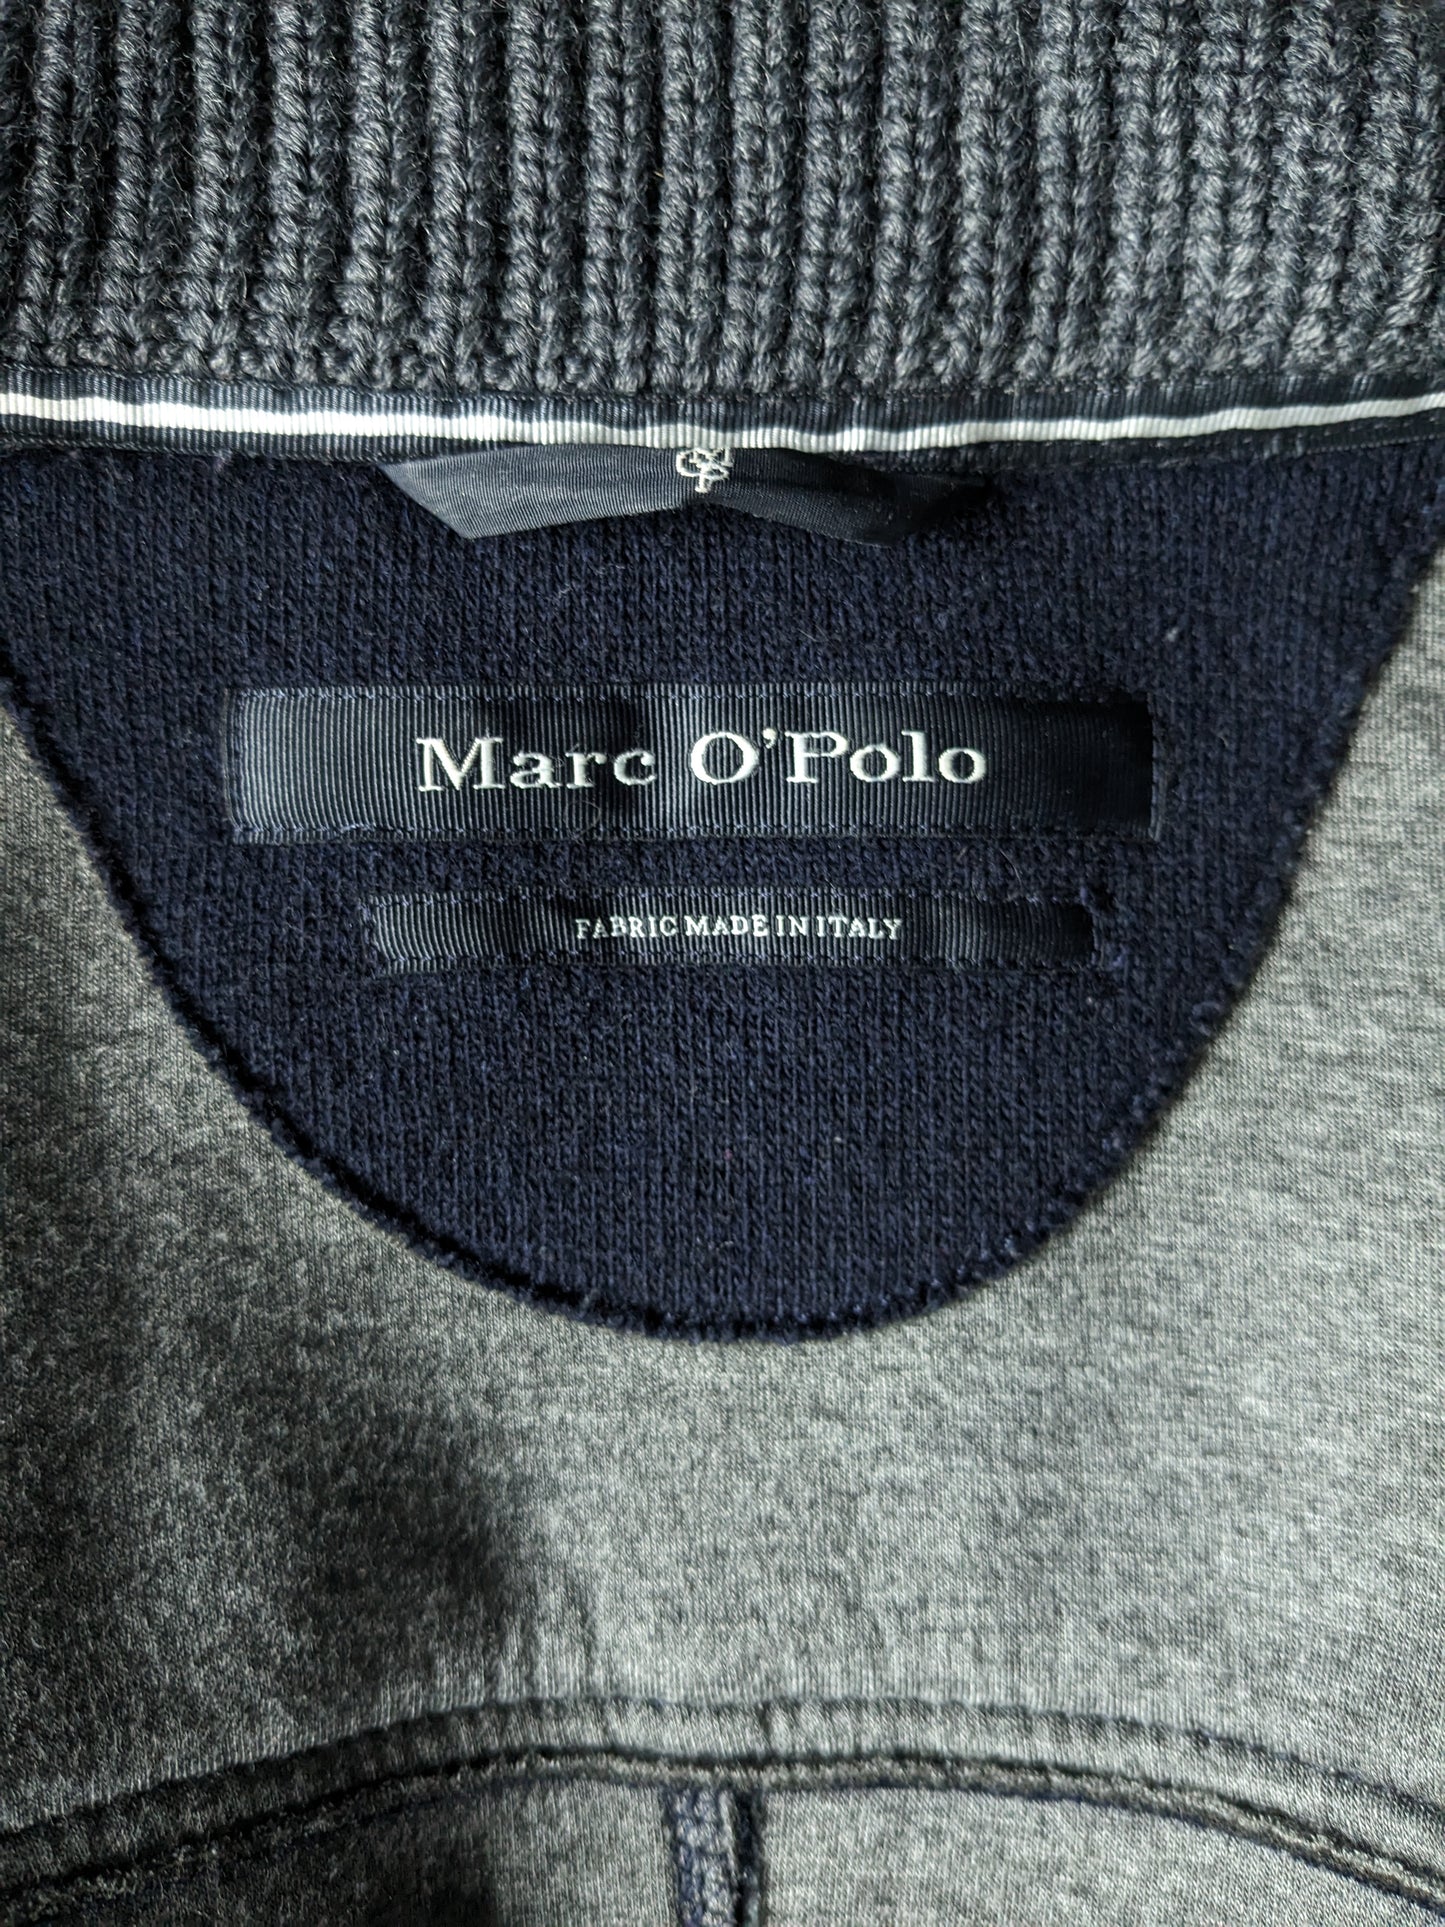 MARC O'POLO LANGRA MEDIA ENTRE la chaqueta con botones. Color azul oscuro. Tamaño 50 / M.